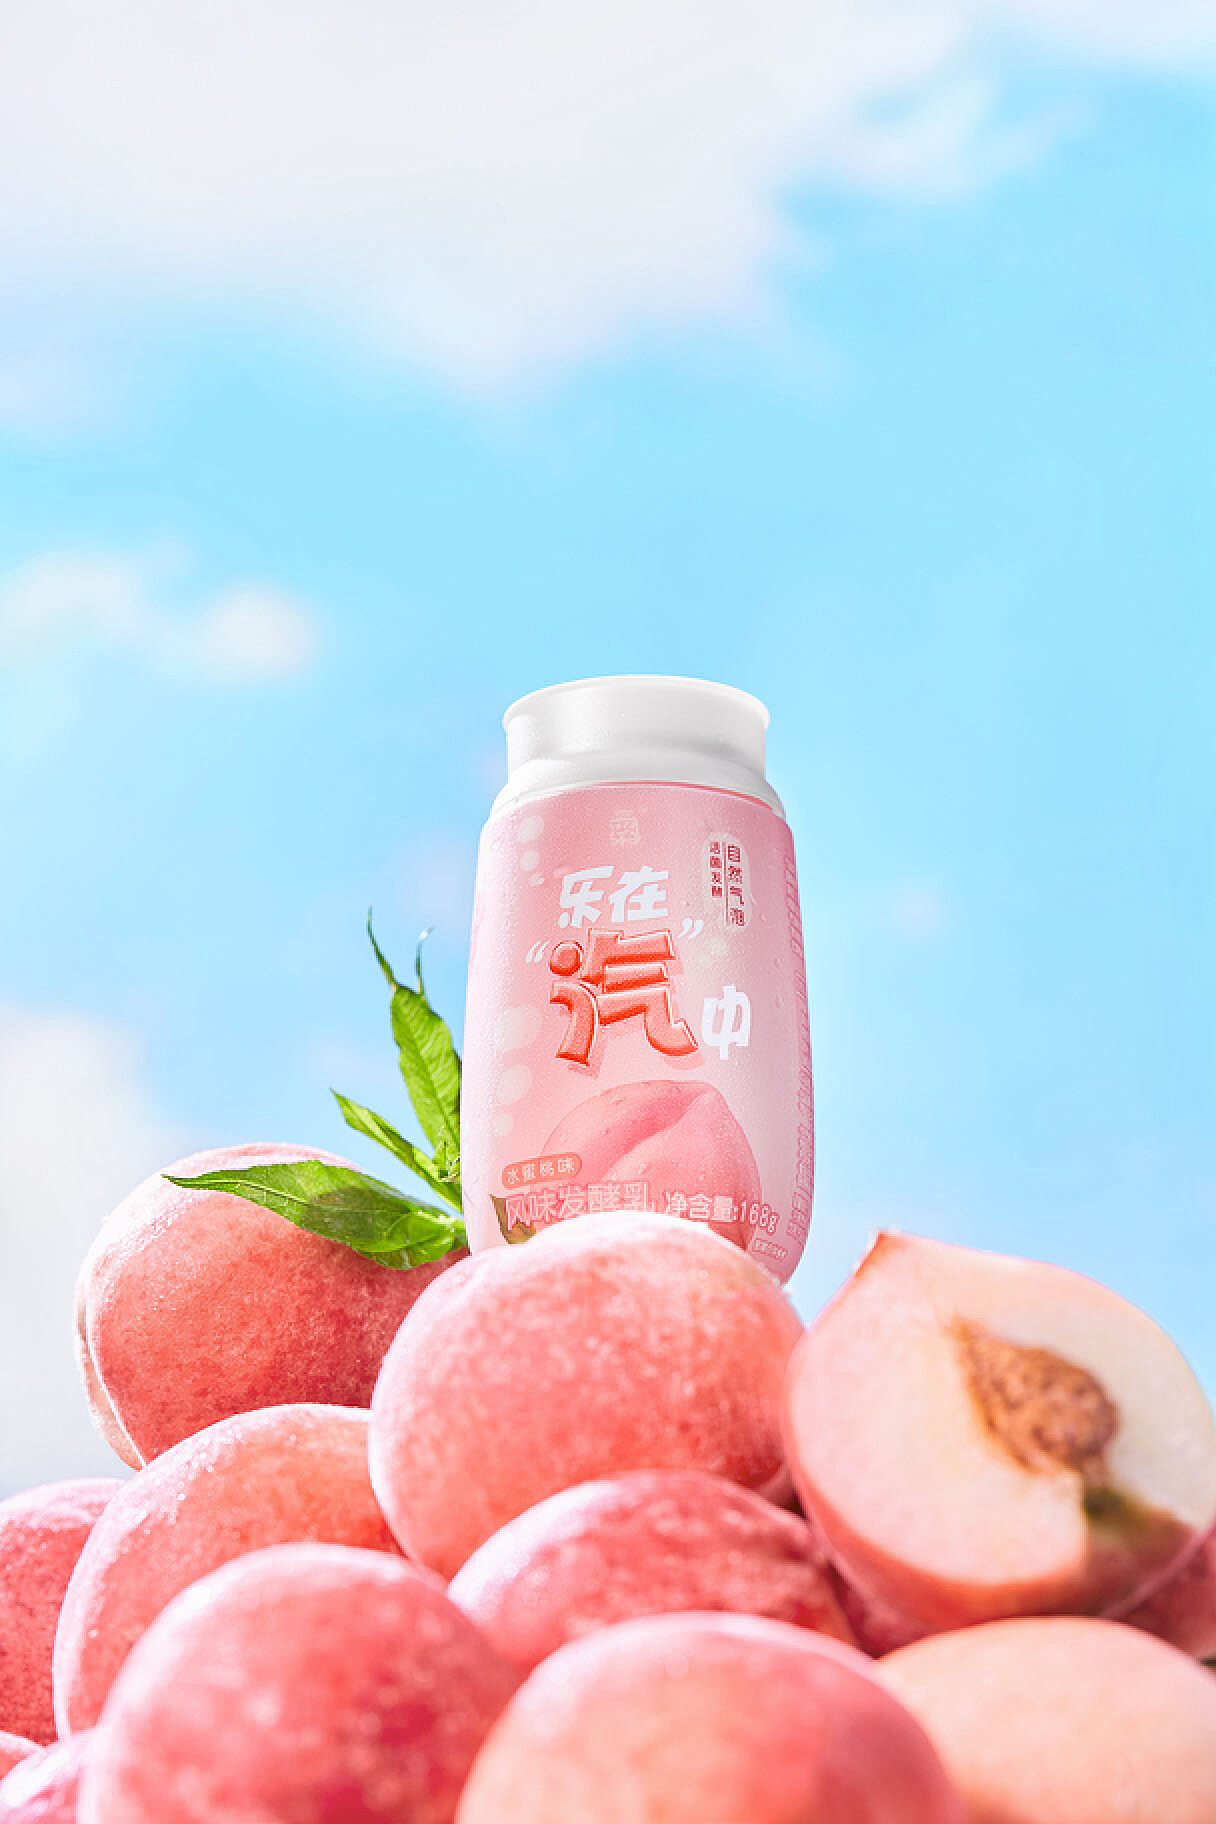 酸奶用在一个玻璃瓶子的桃子 库存照片. 图片 包括有 制动手, 油桃, 瓶子, 重点, 牛奶店, 点心, 营养 - 74056794